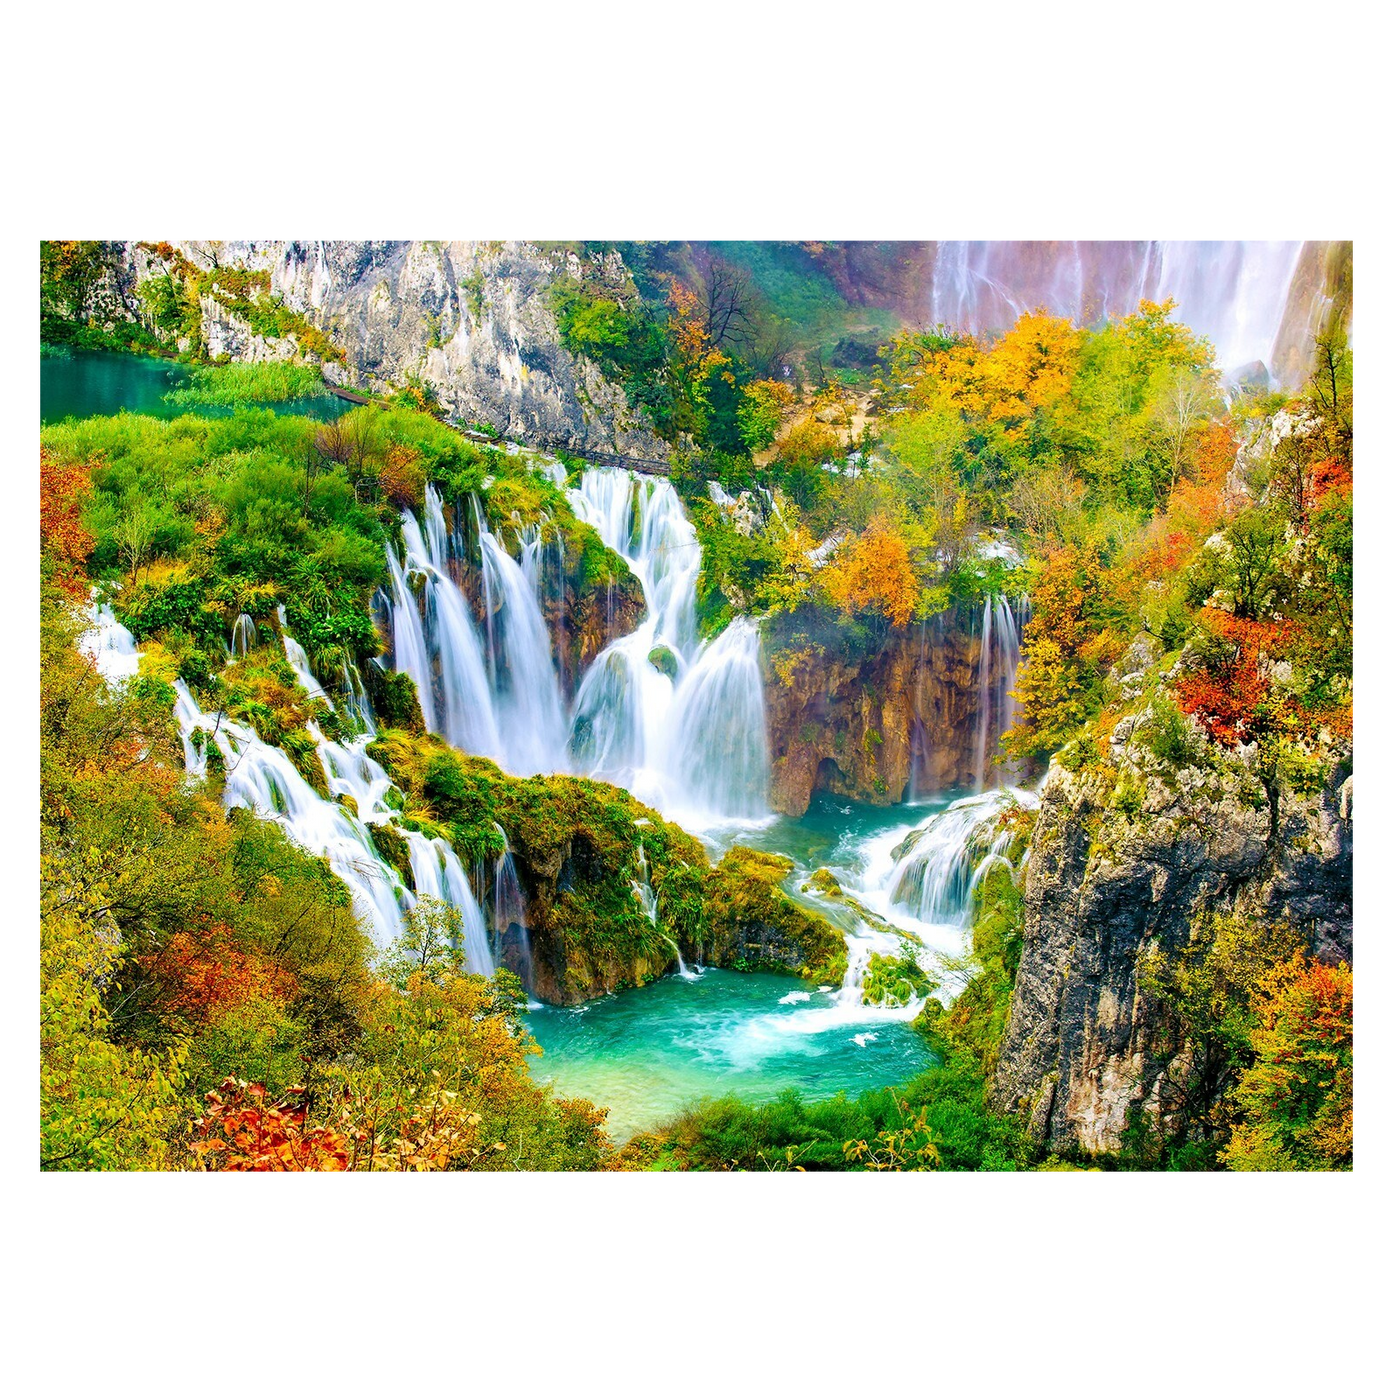 Pilvice Waterfalls in Autumn